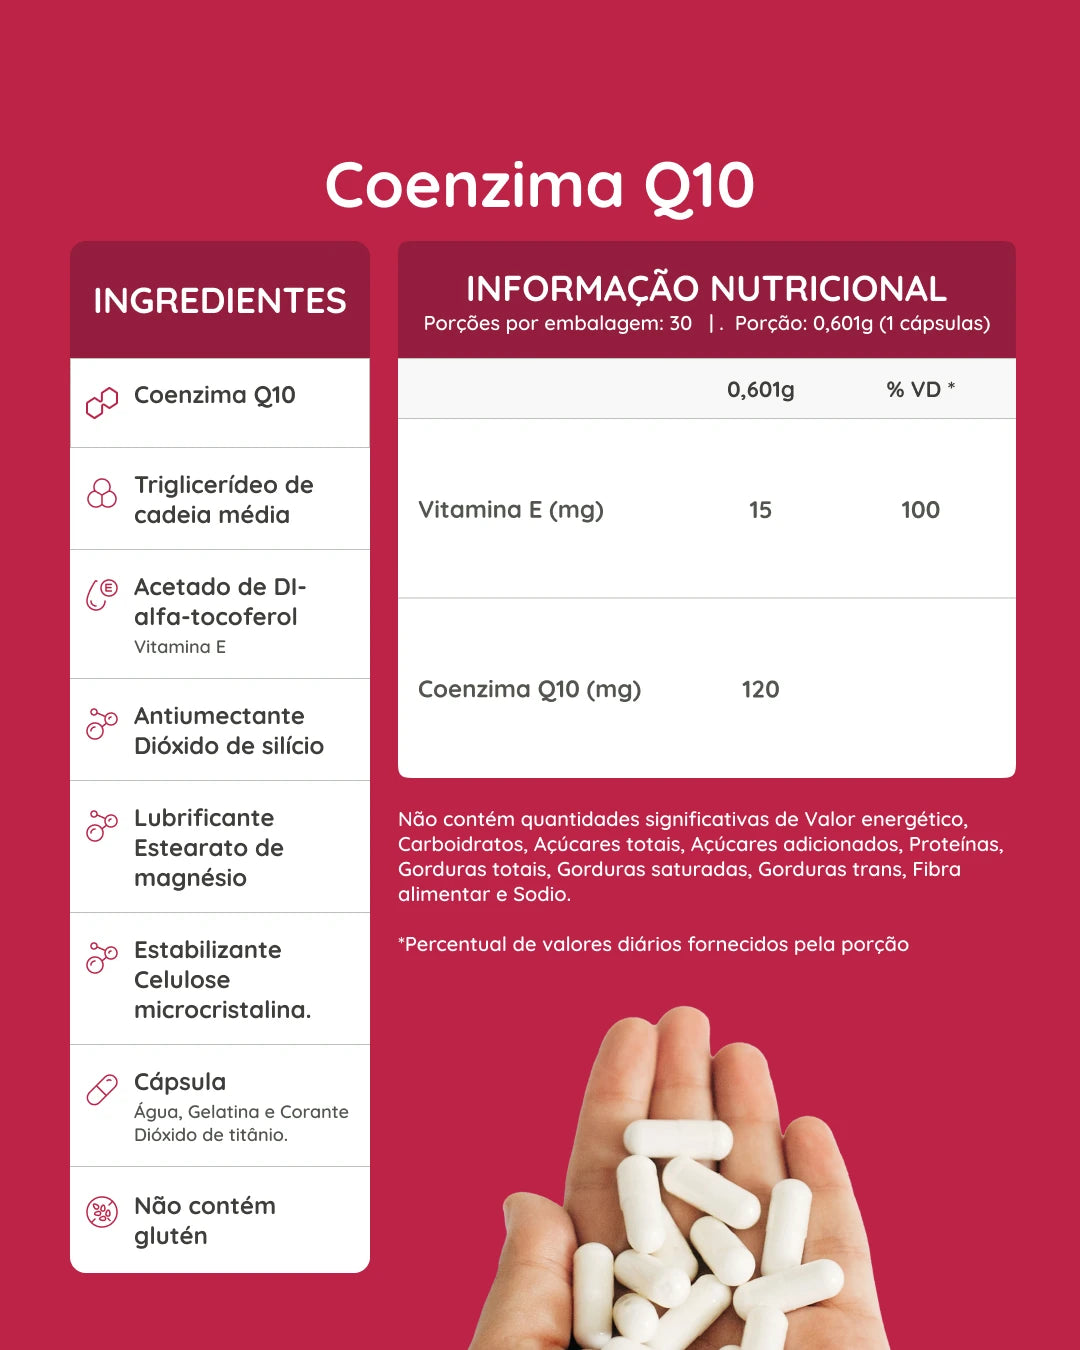 Coenzima Q10 120 mg em cápsulas ou em filme